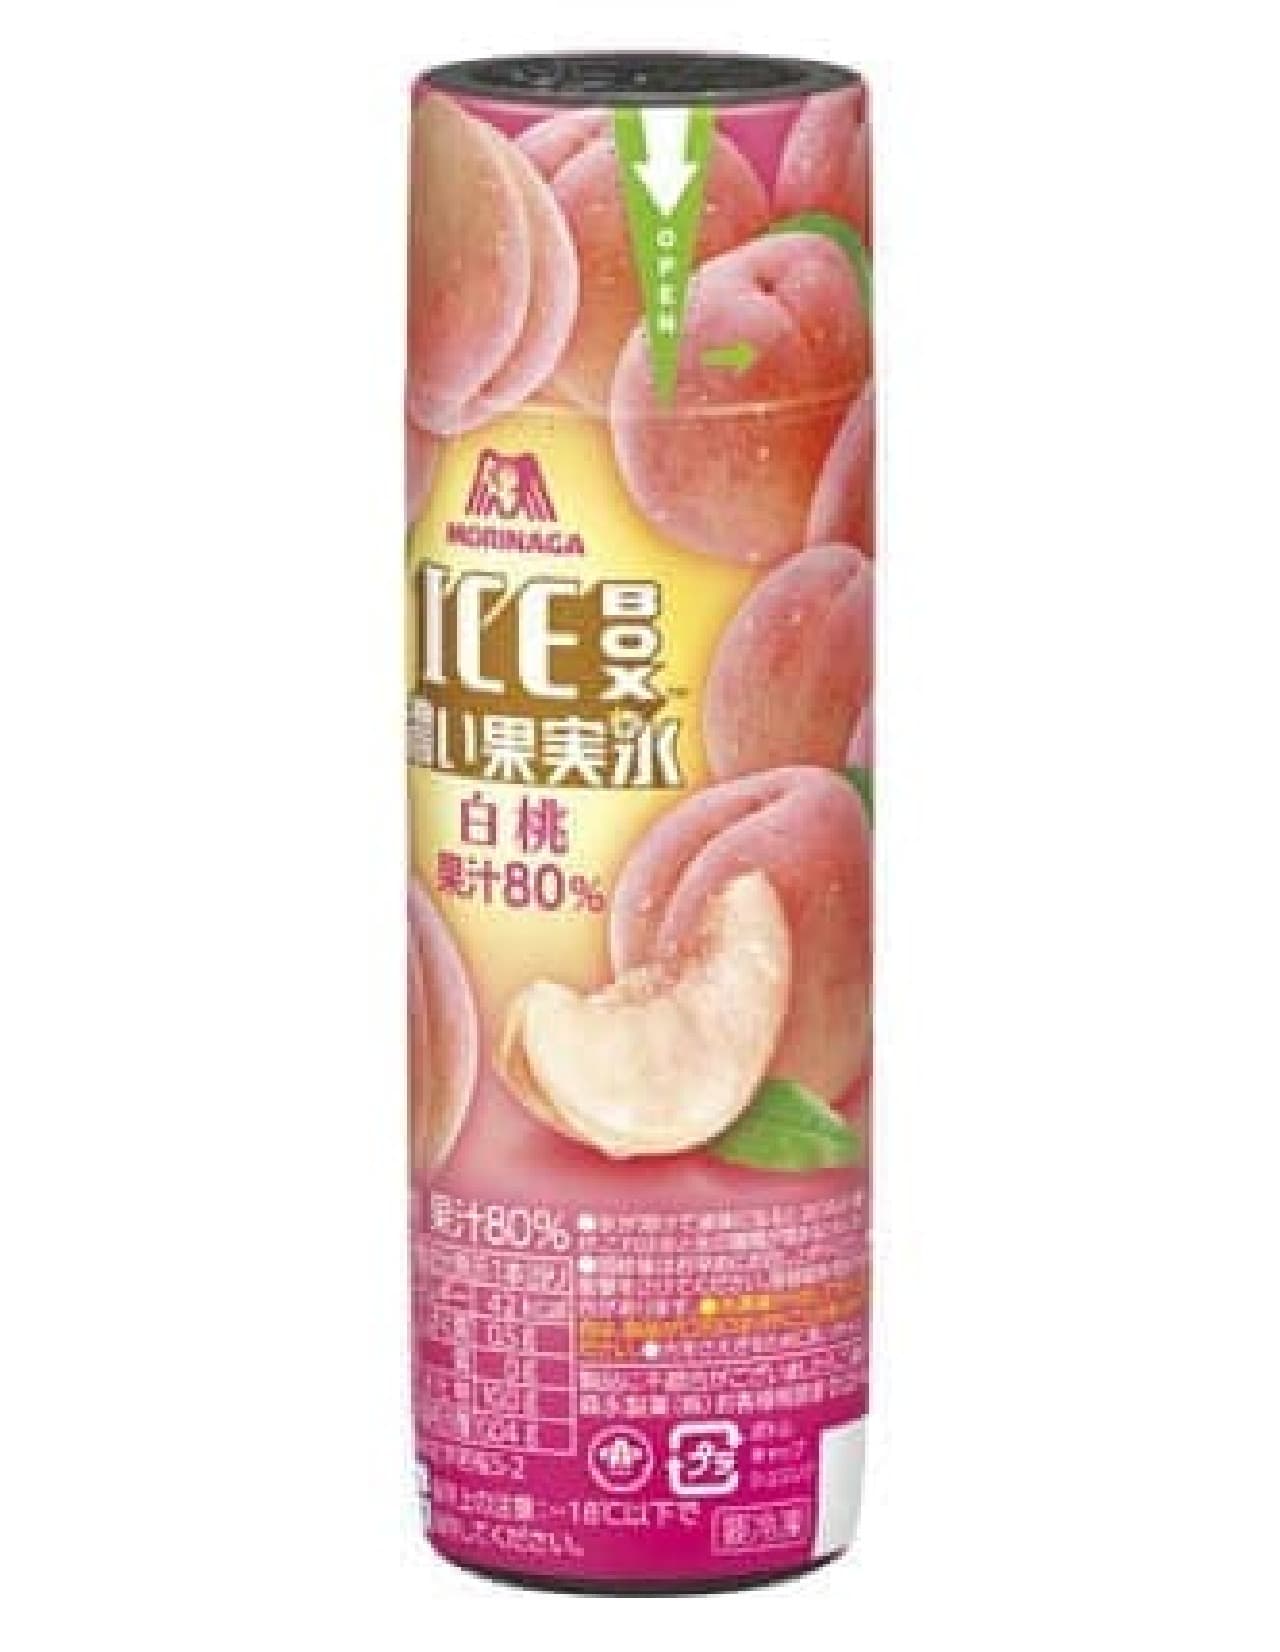 Ice box Dark fruit ice [white peach]